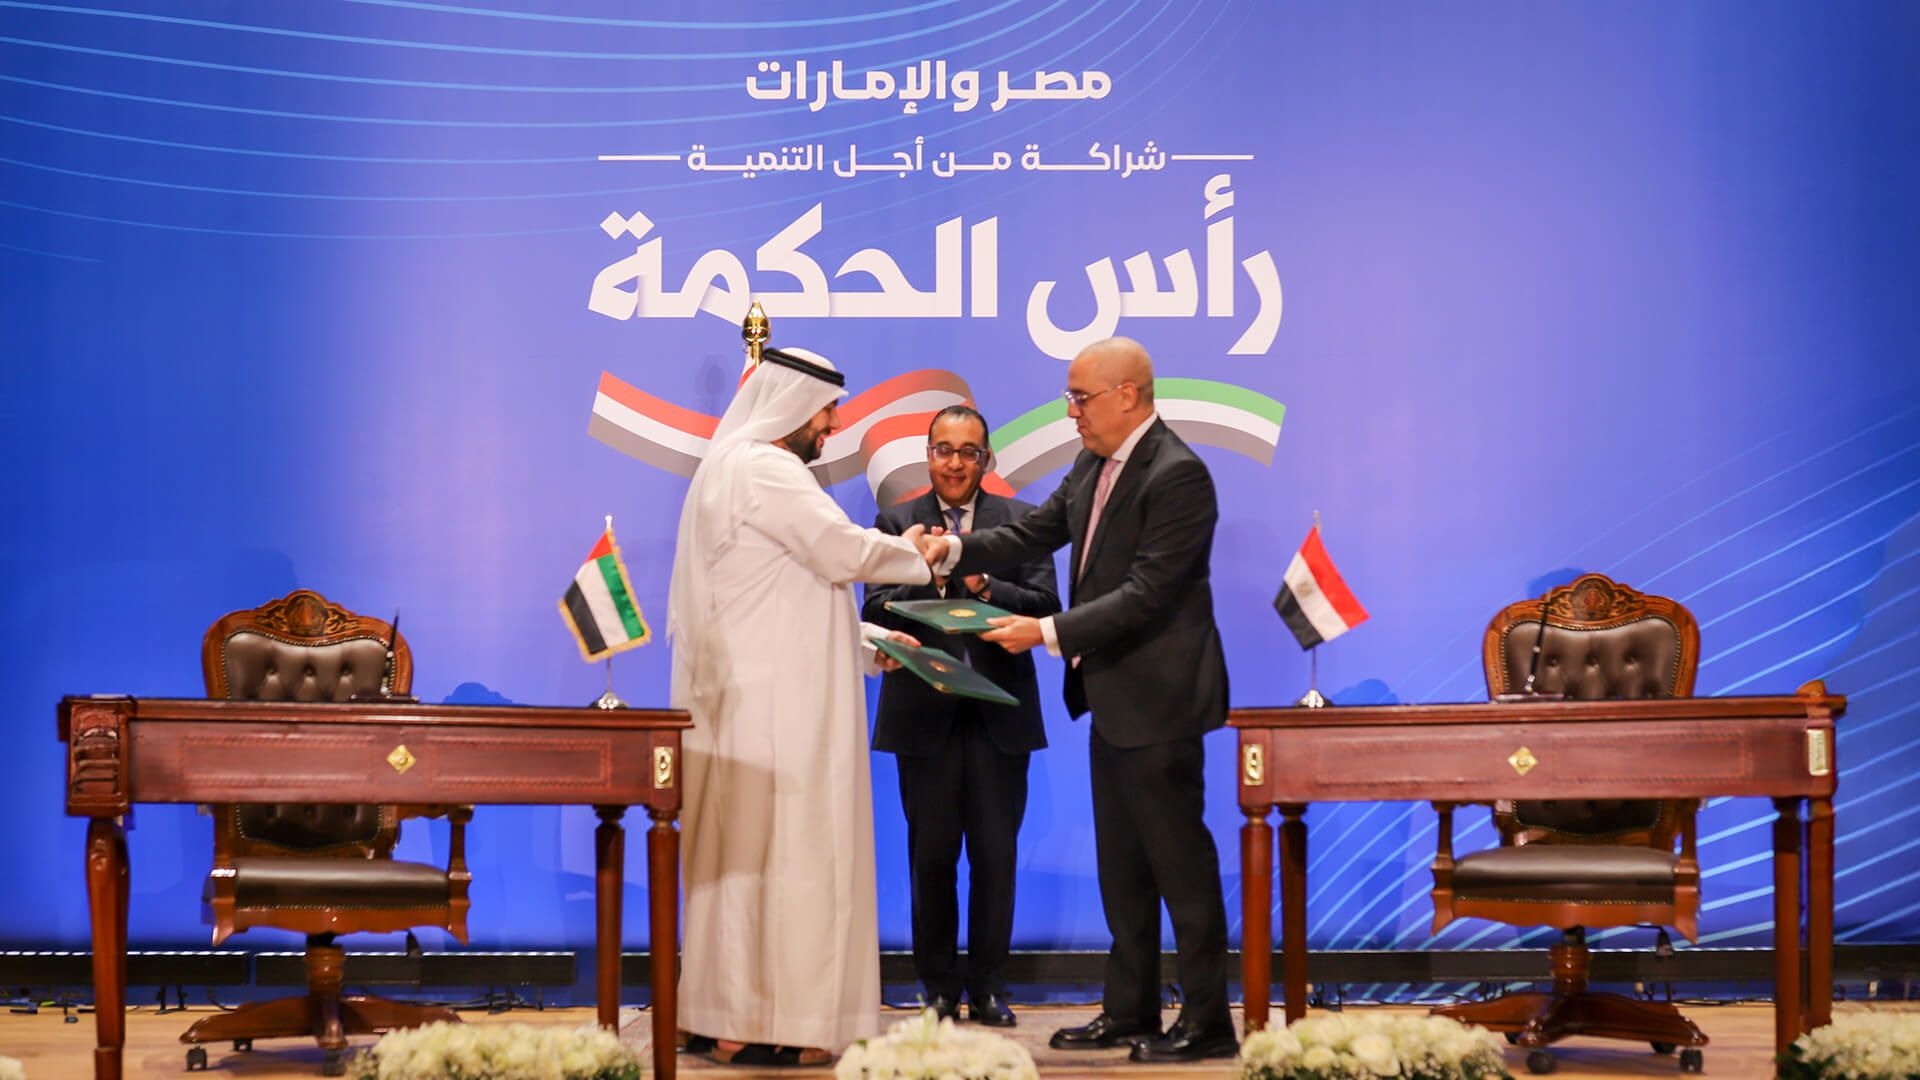 L'Egitto ha raggiunto un accordo da 35 miliardi di dollari con gli Emirati Arabi Uniti per lo sviluppo della città di Ras el-Hekma, sulla costa nord-occidentale